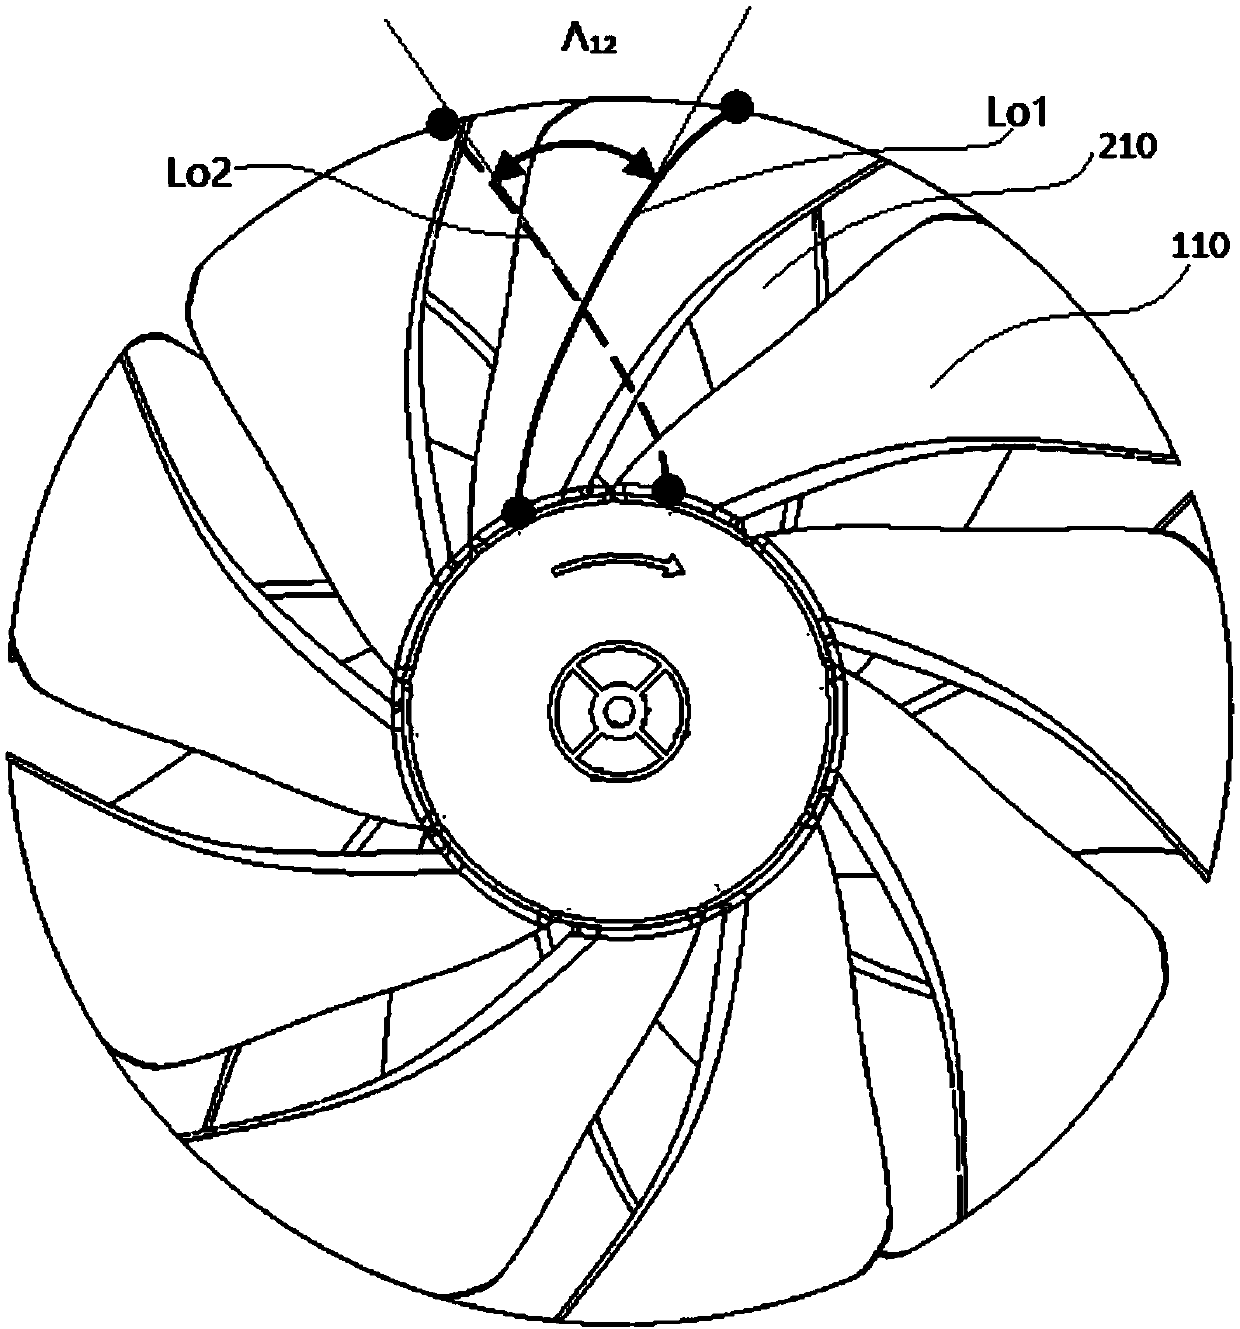 Counter-rotating fan